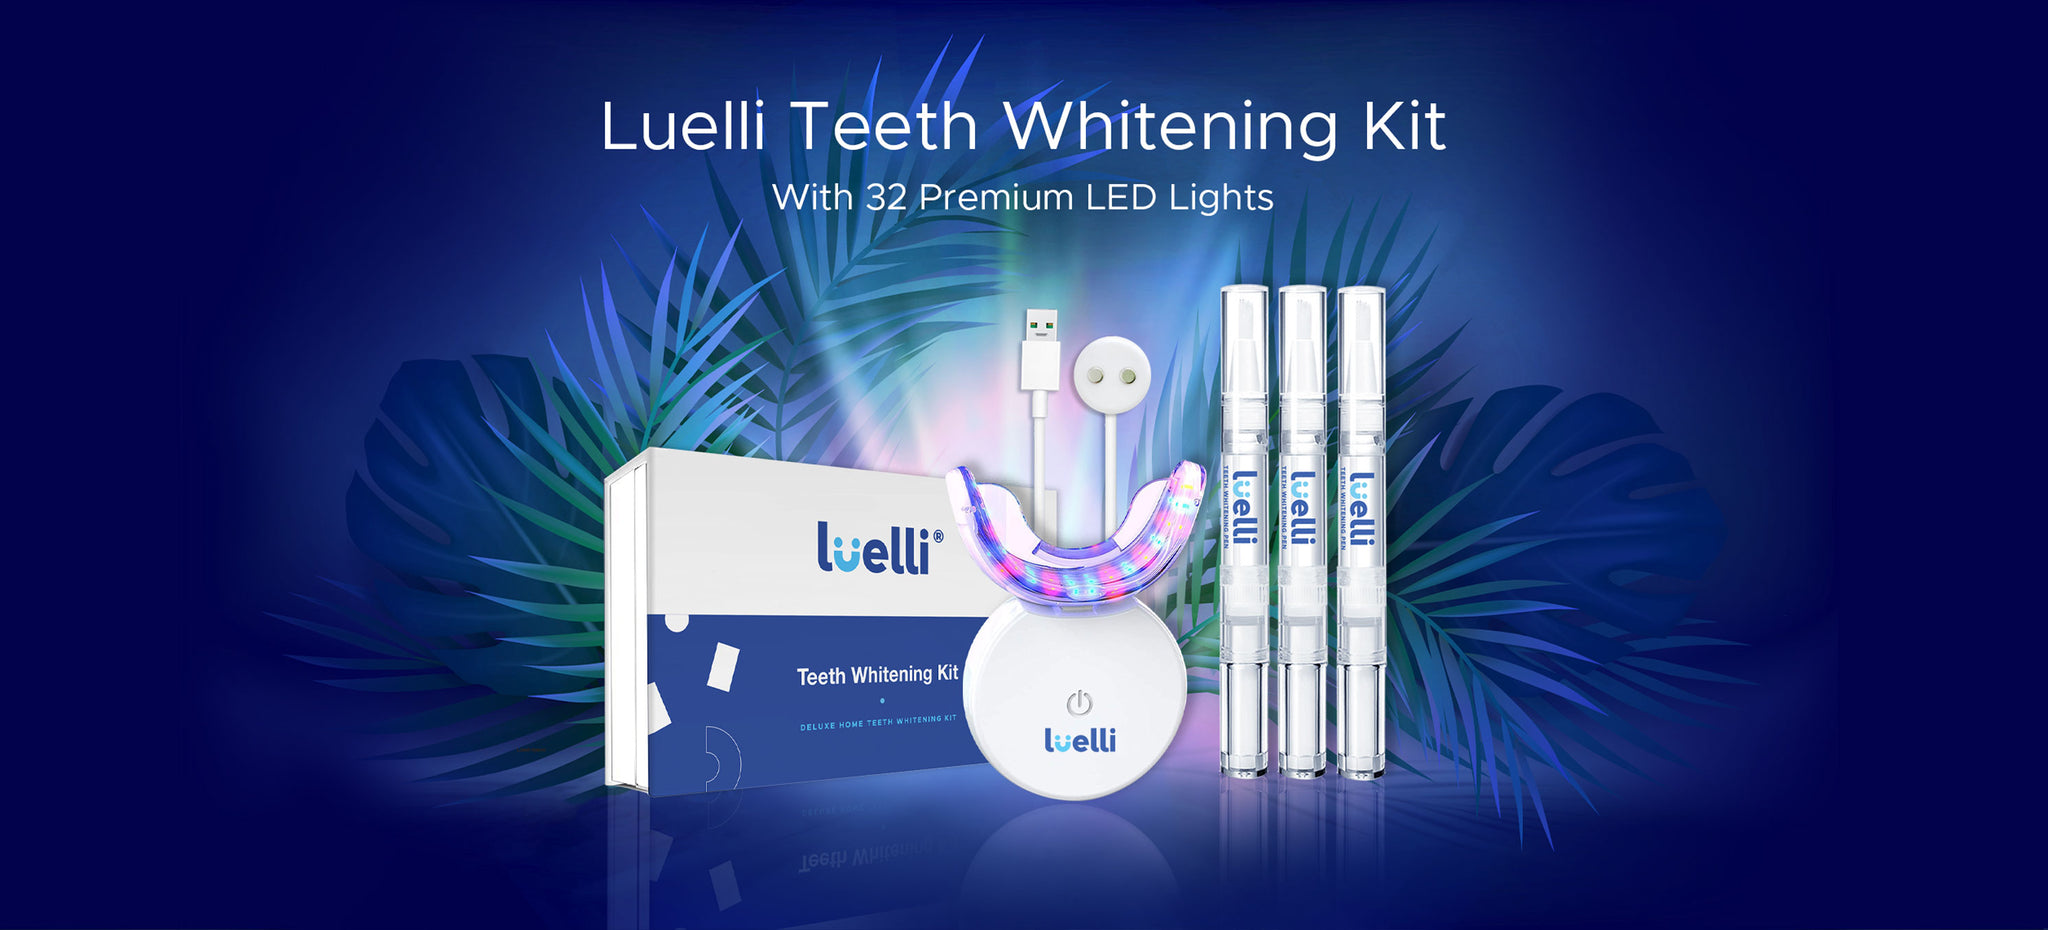 Luelli Teeth Whitening Kit